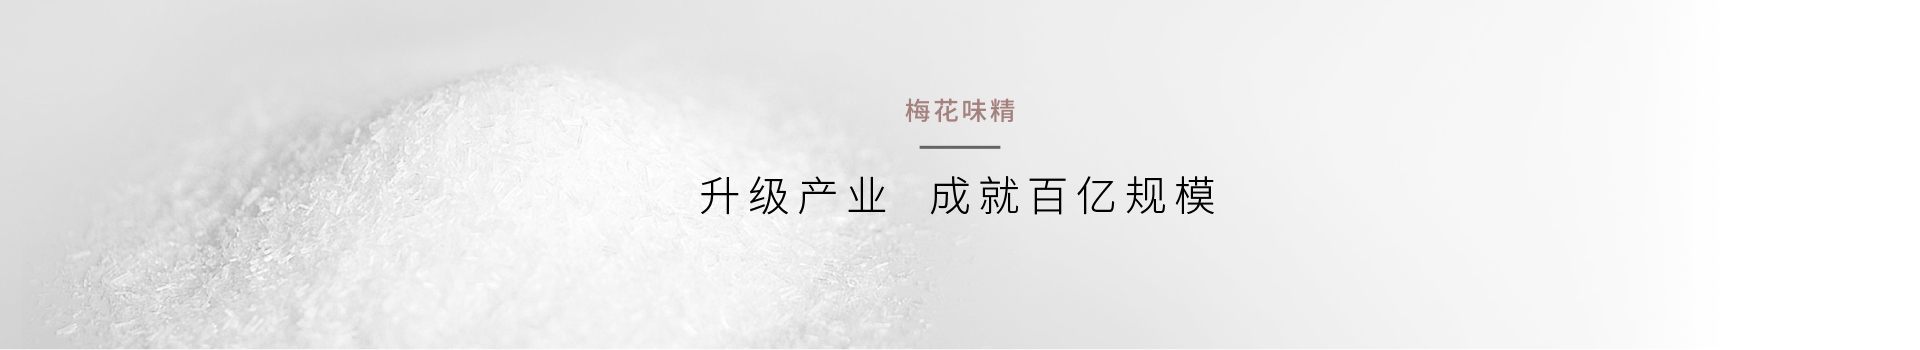 企业品牌升级_品牌形象升级公司_刘路明策划-上海HJC黄金城集团官网